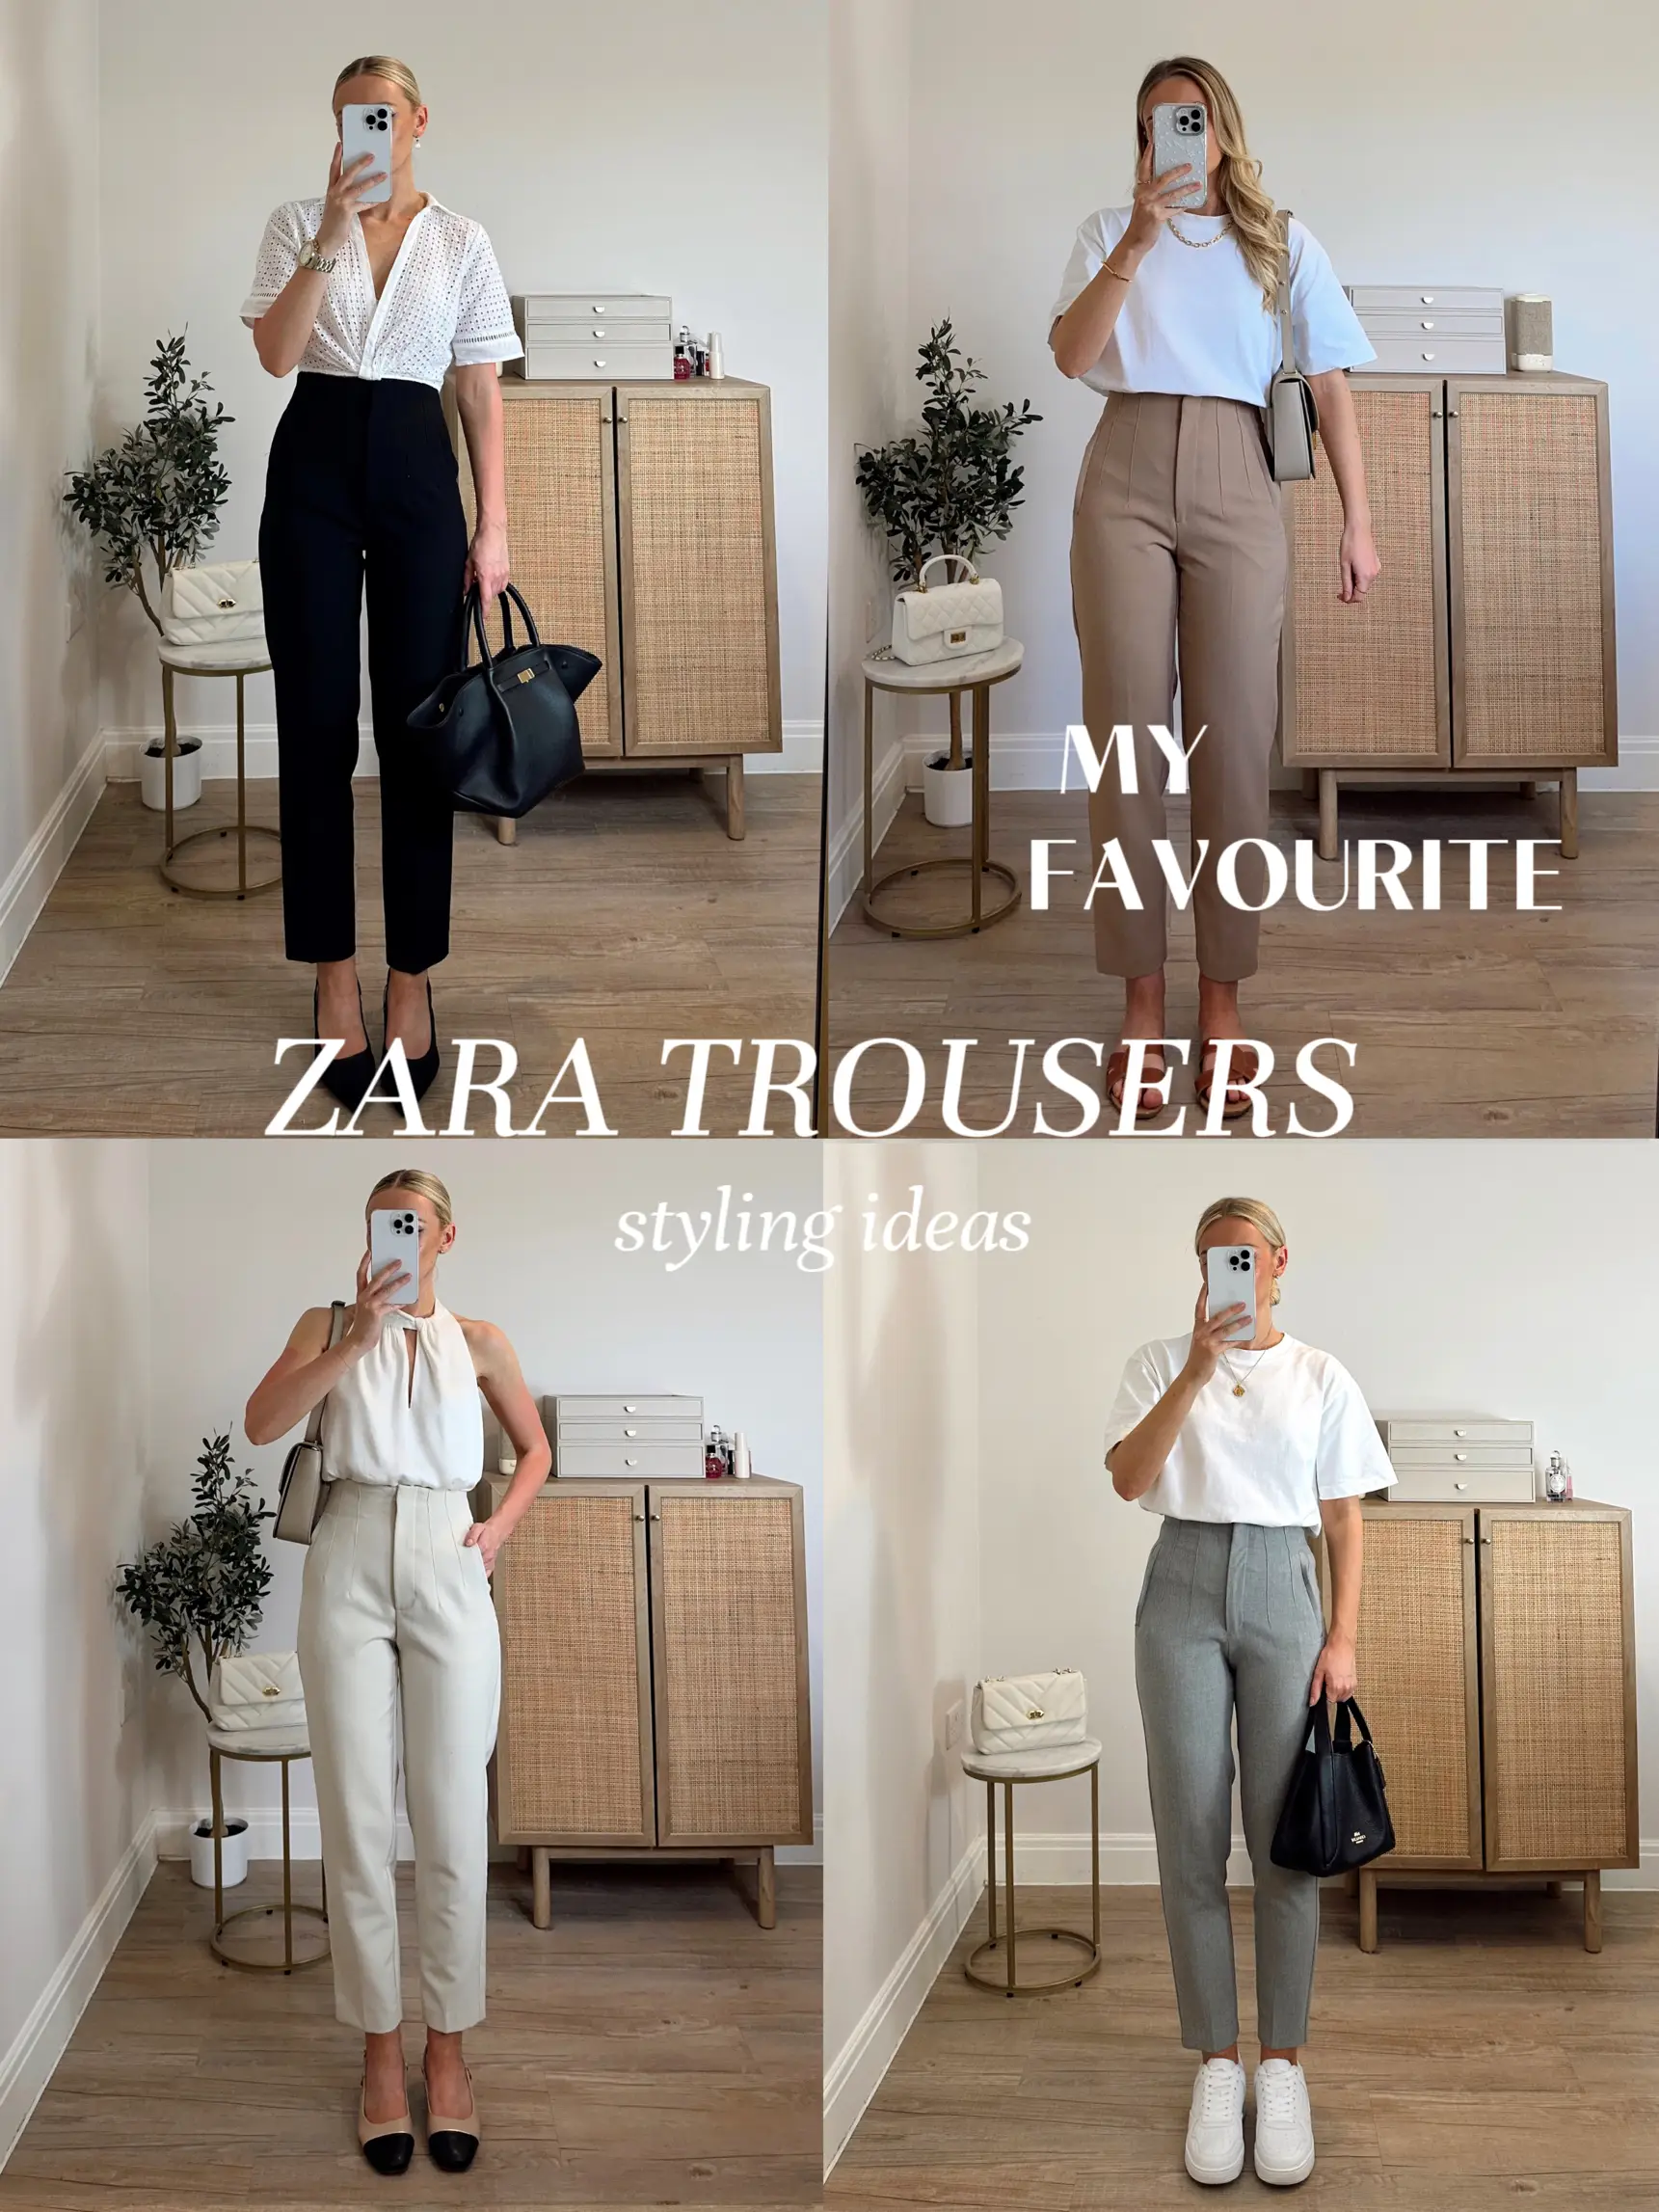 Zara Online Shopping - Lemon8 Search